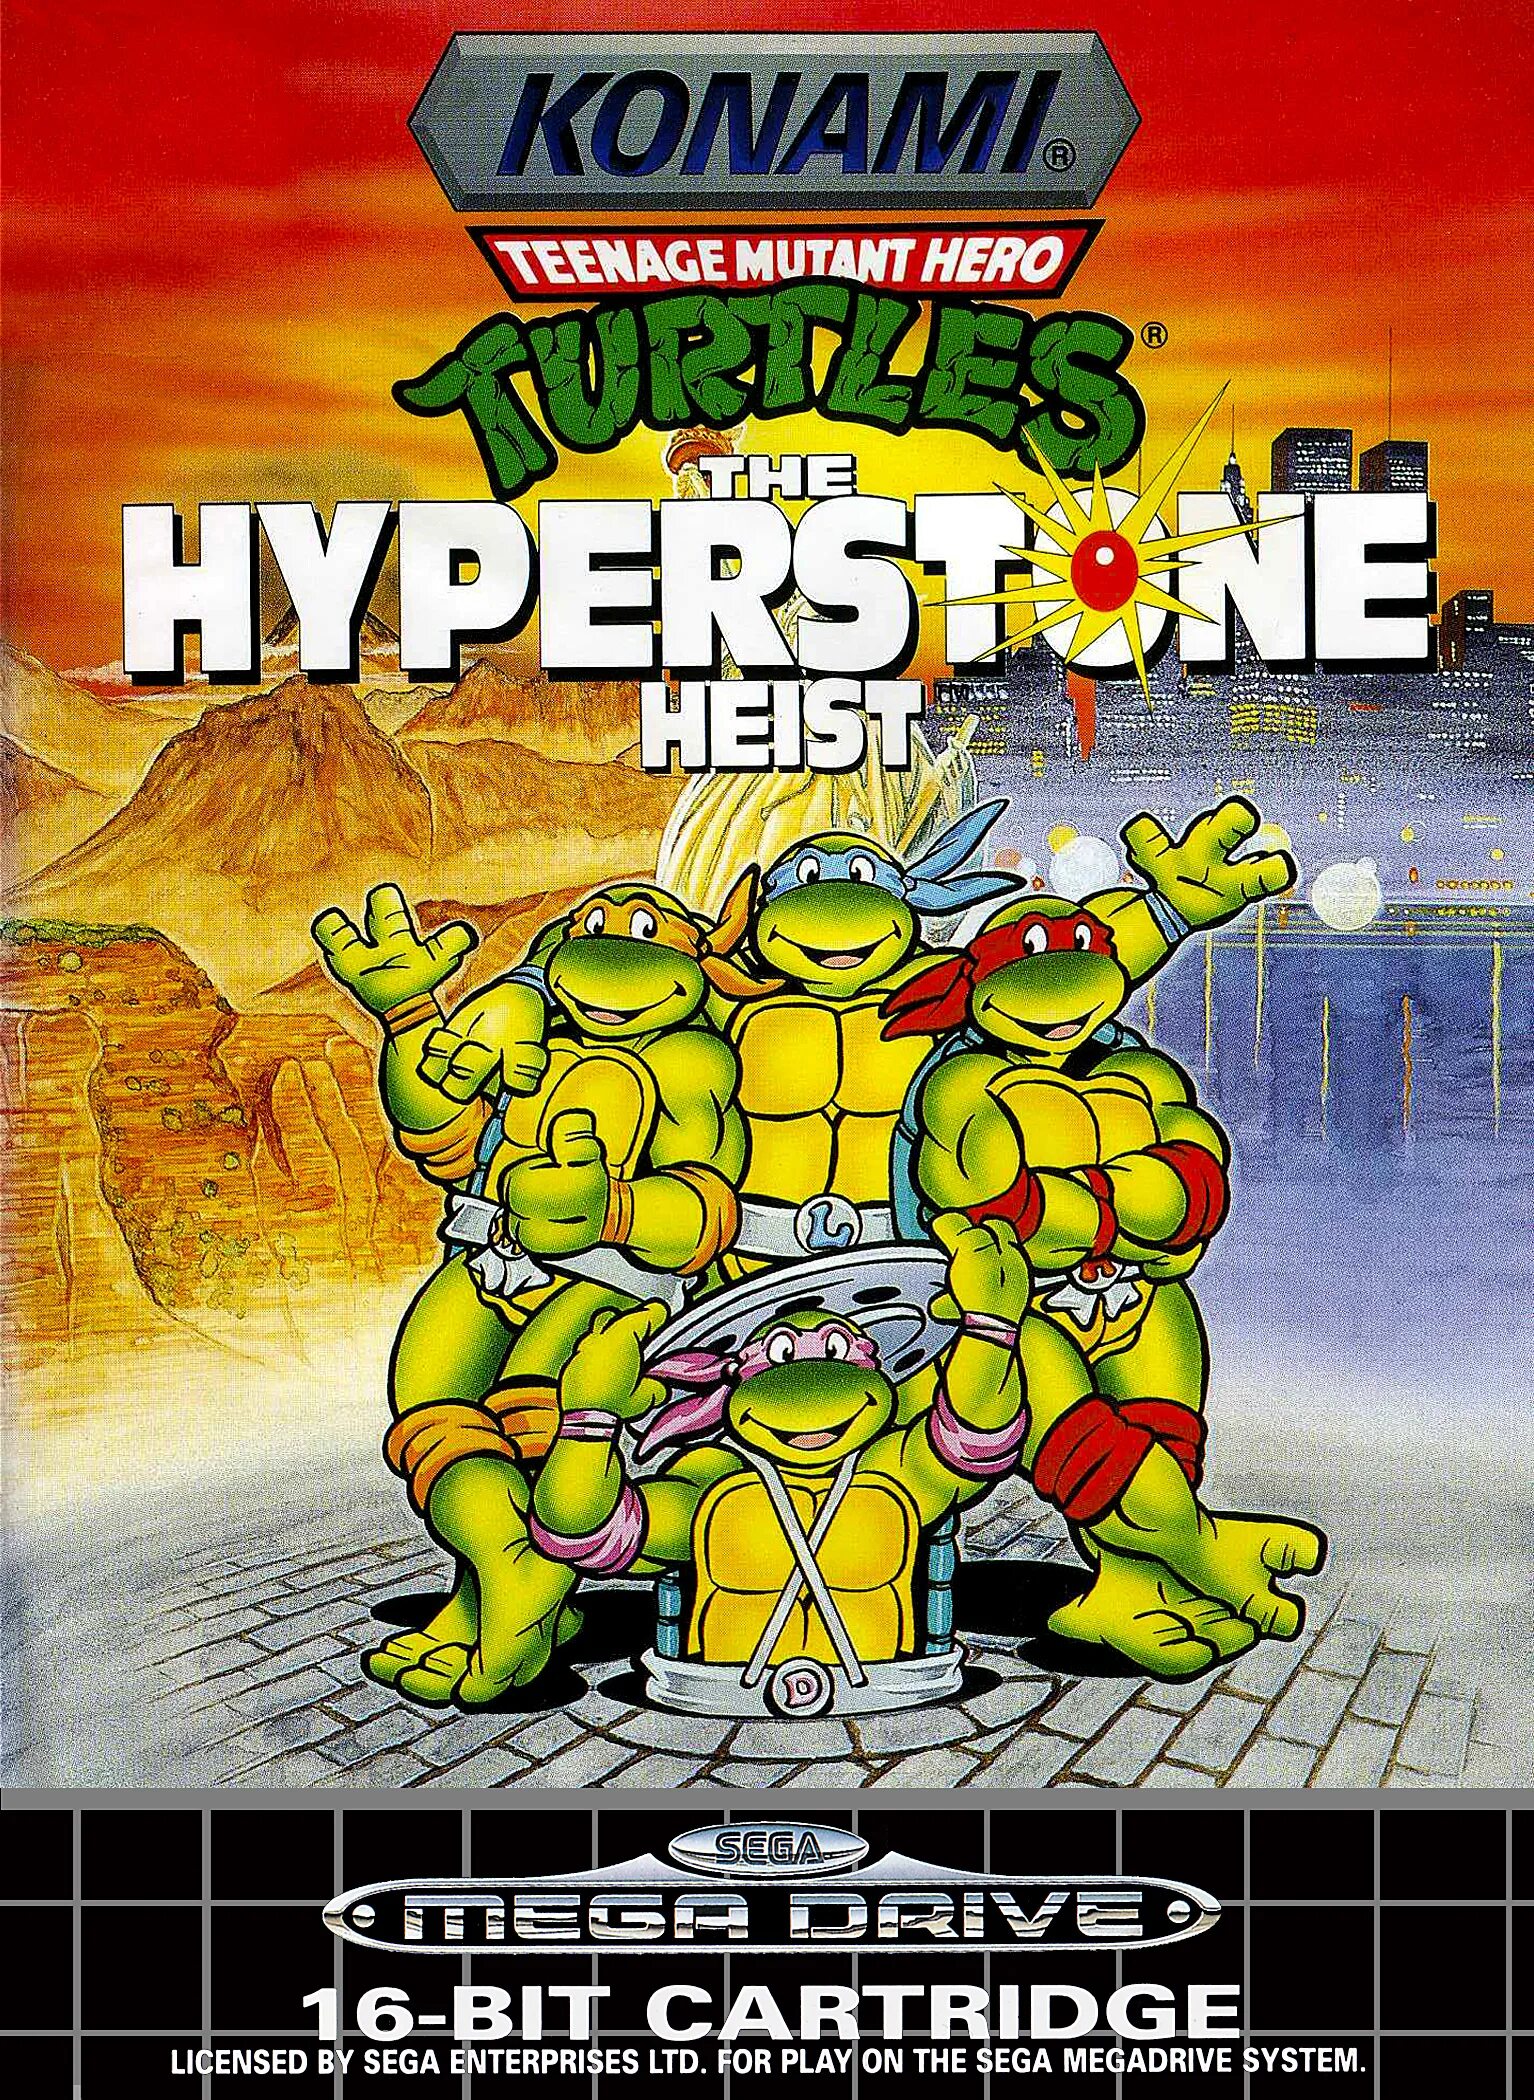 Tmnt sega. Teenage Mutant Ninja Turtles the Hyperstone Heist. Teenage Mutant Ninja Turtles the Hyperstone Heist Sega обложка. Черепашки ниндзя Hyperstone Heist. Teenage Mutant Ninja Turtles: the Hyperstone Heist (Sega Genesis).